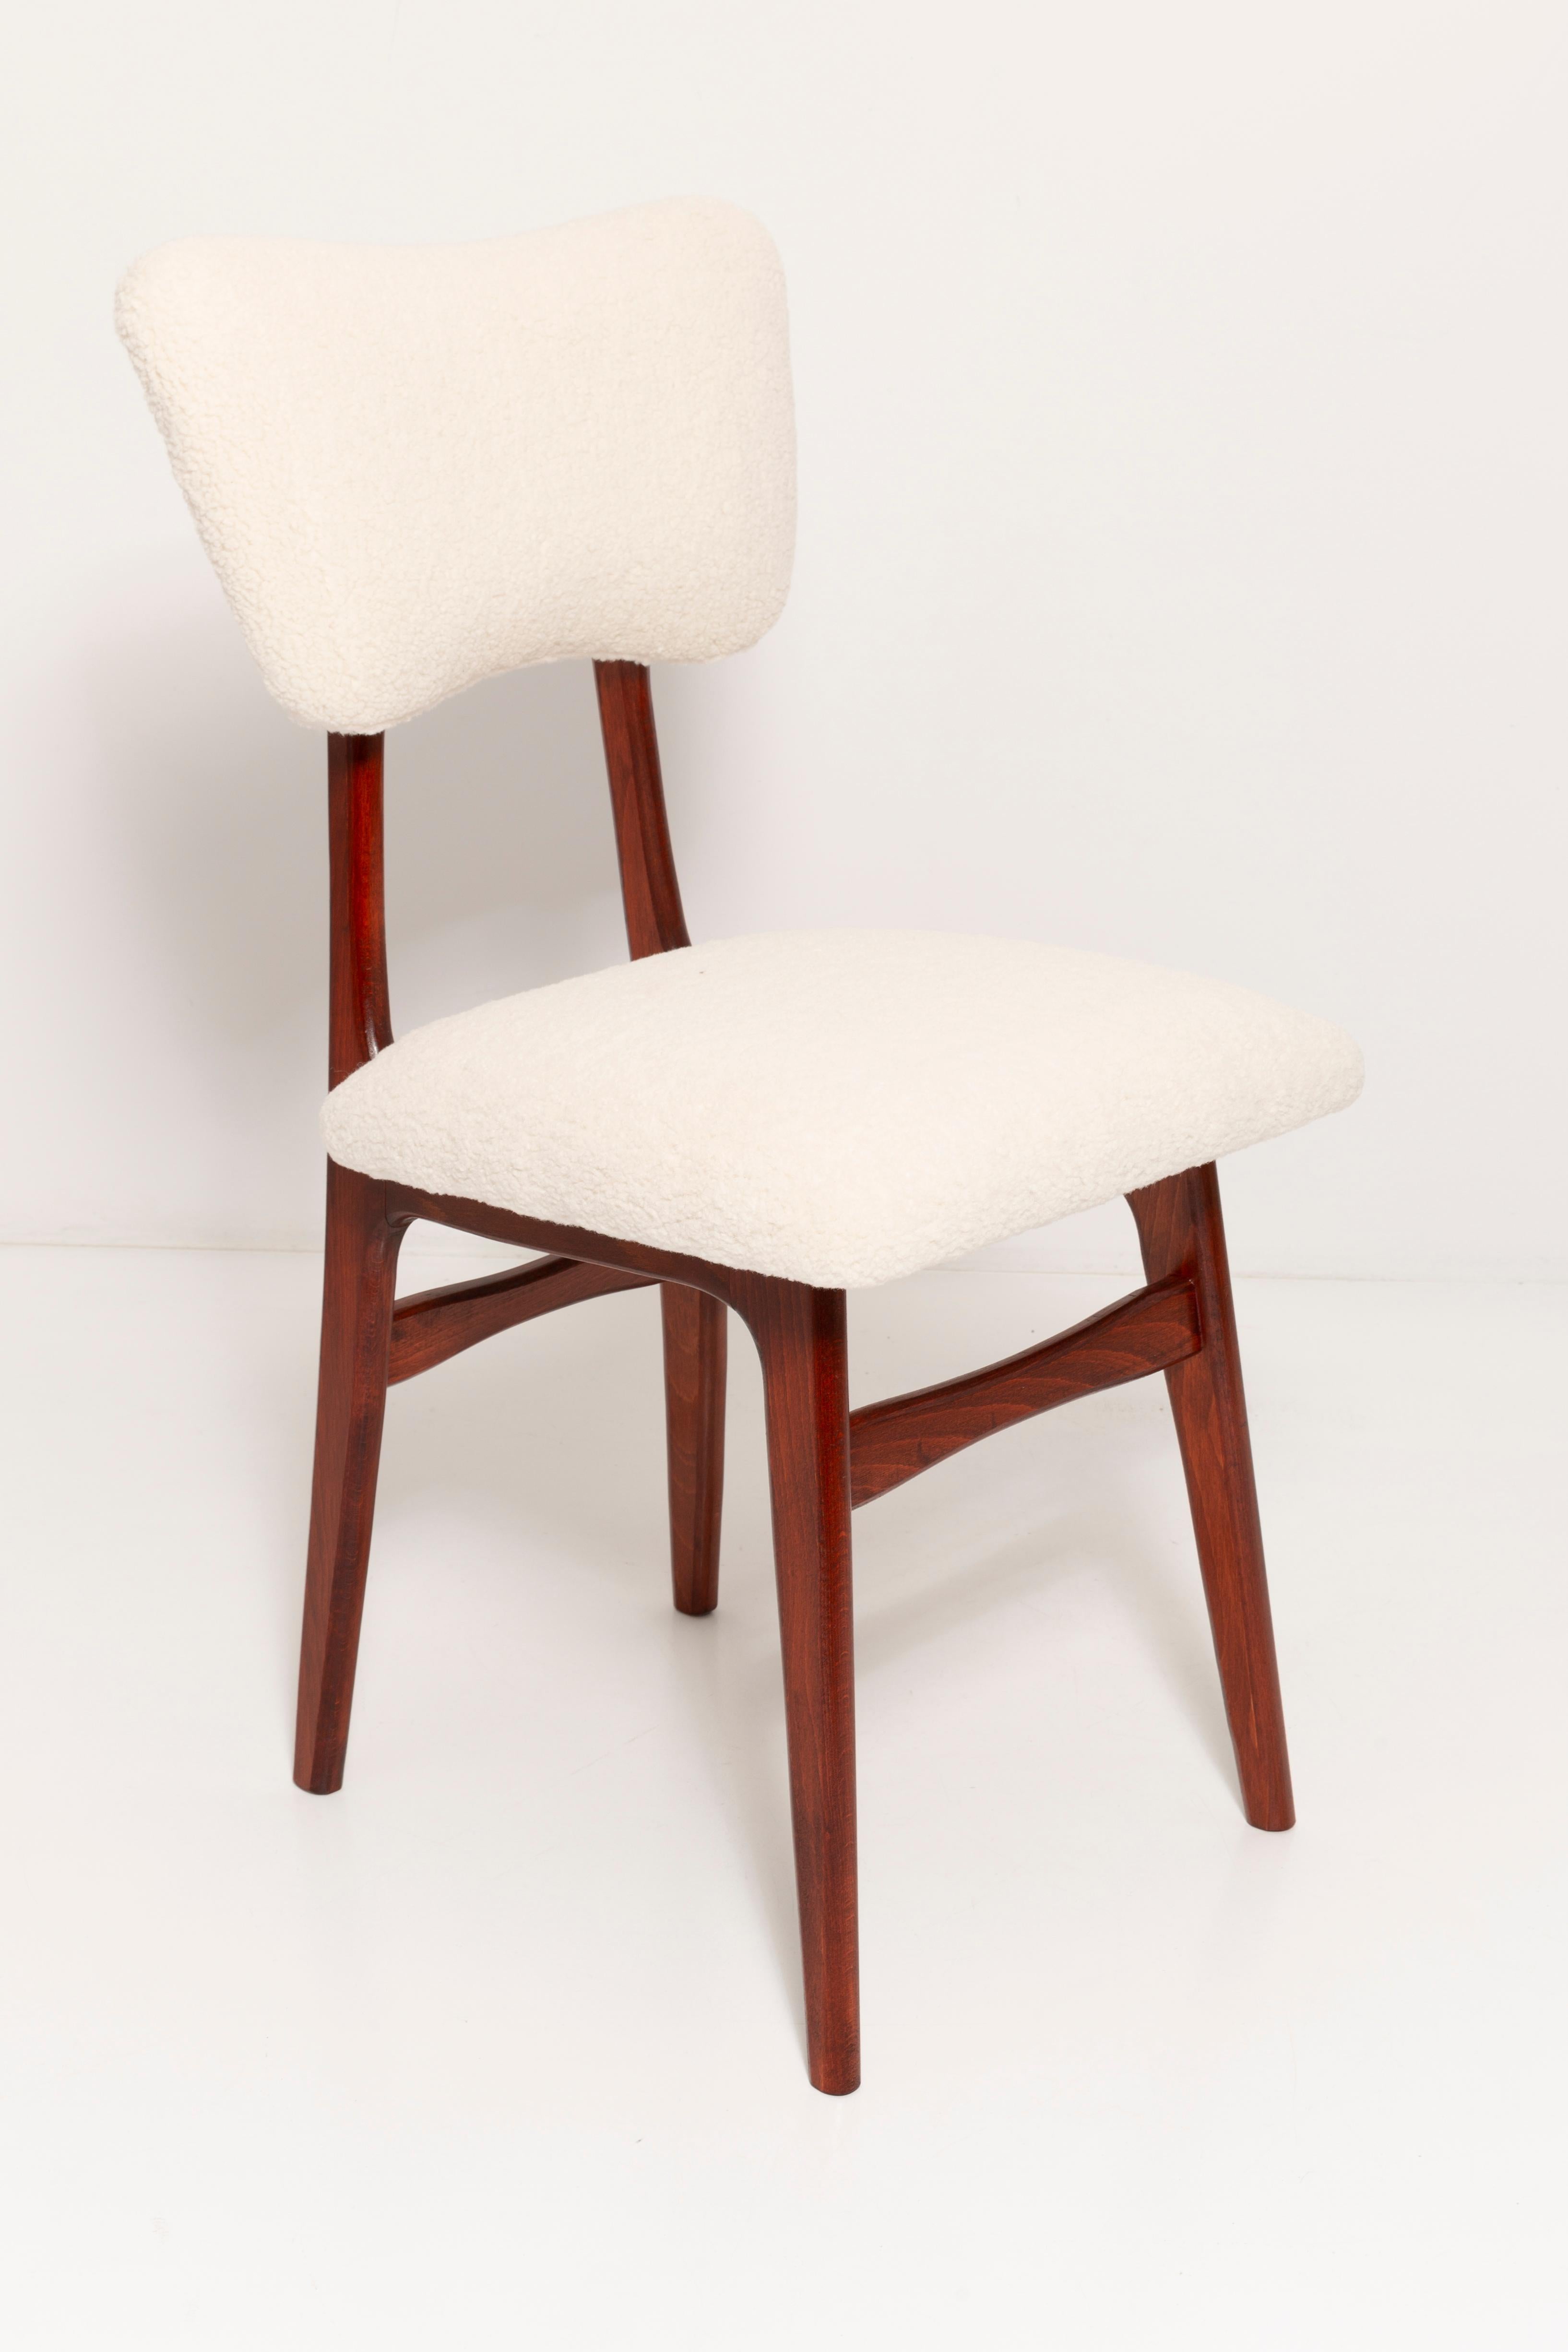 Chaises conçues par le professeur Rajmund Halas. Fabriqué en bois de hêtre. Les chaises ont subi une rénovation complète de leur rembourrage ; les boiseries ont été rafraîchies et peintes en laque couleur cerise. L'assise et le dossier sont habillés